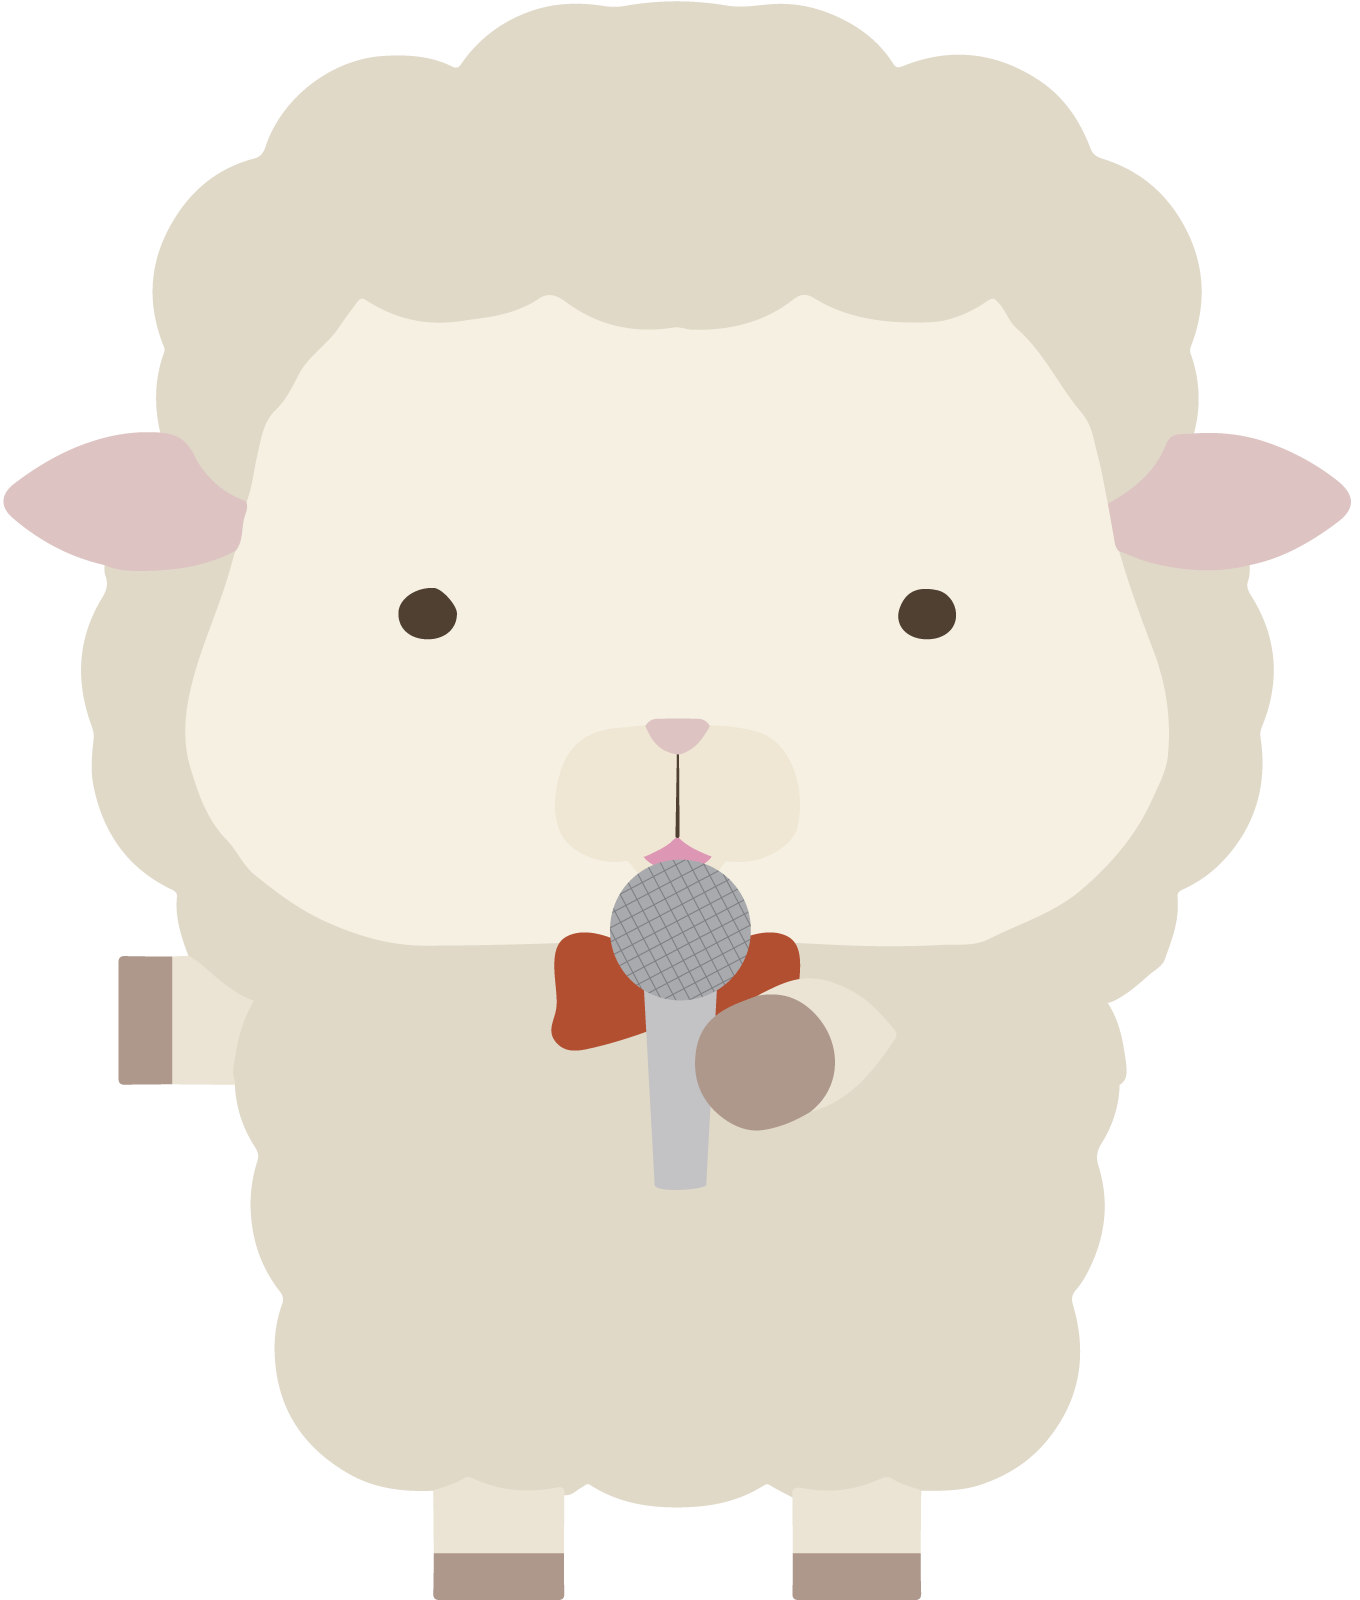 マイクを持って話している羊のイラスト